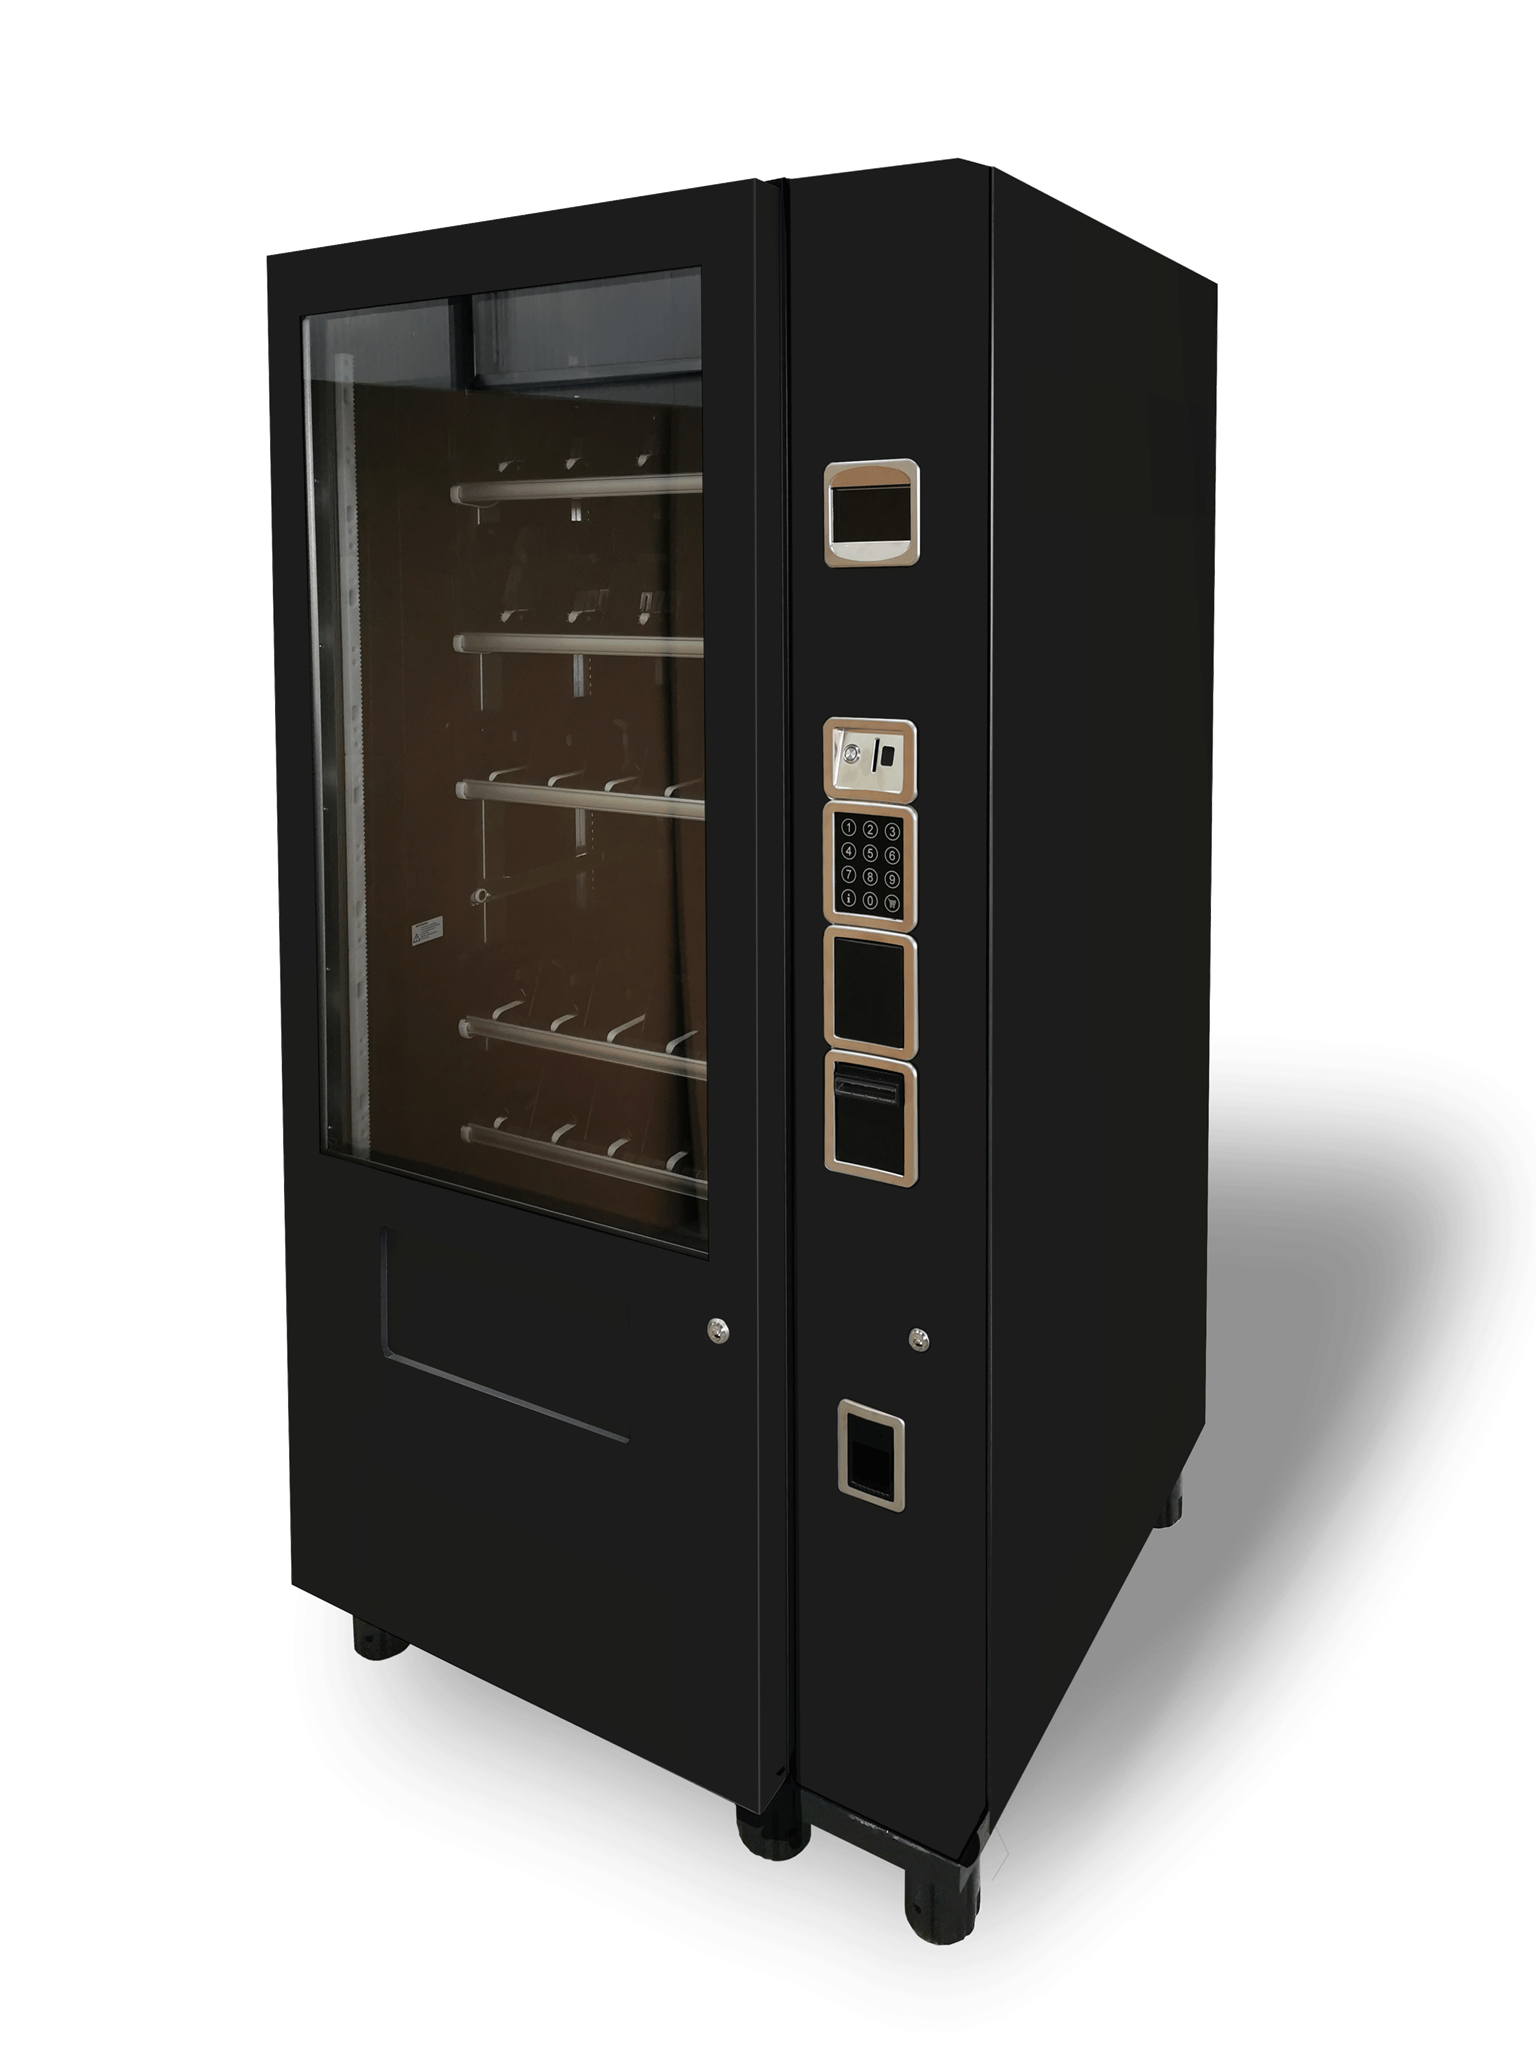 Regio-Box Automat für regionale Produkte